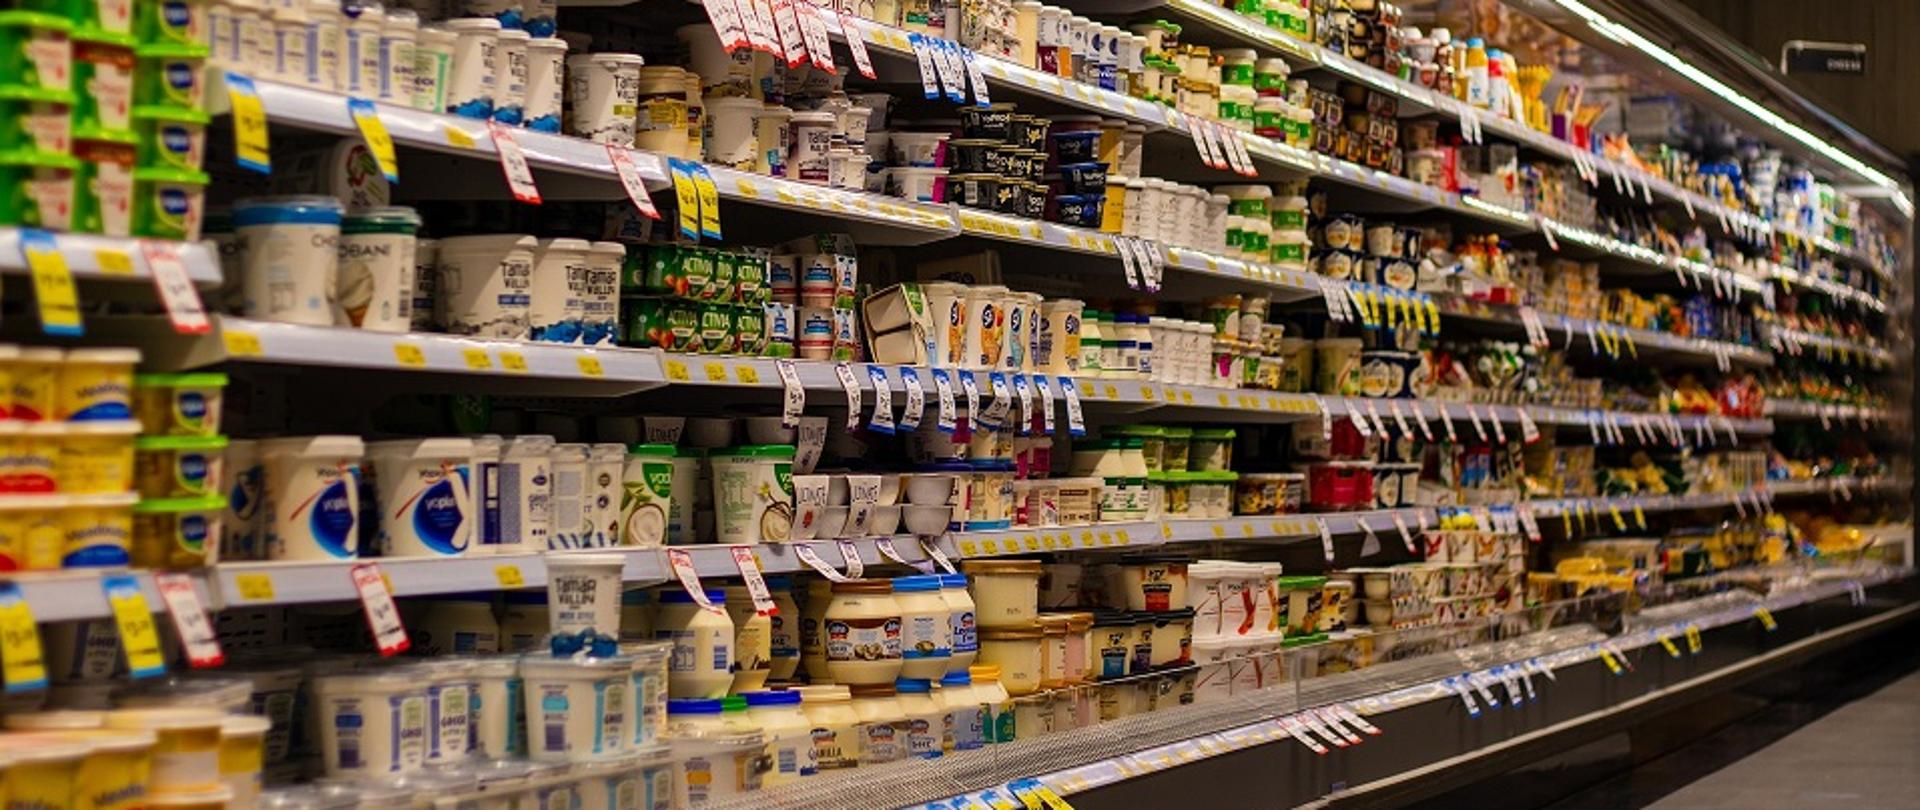 Półki z produktami spozywczymi w supermarkecie